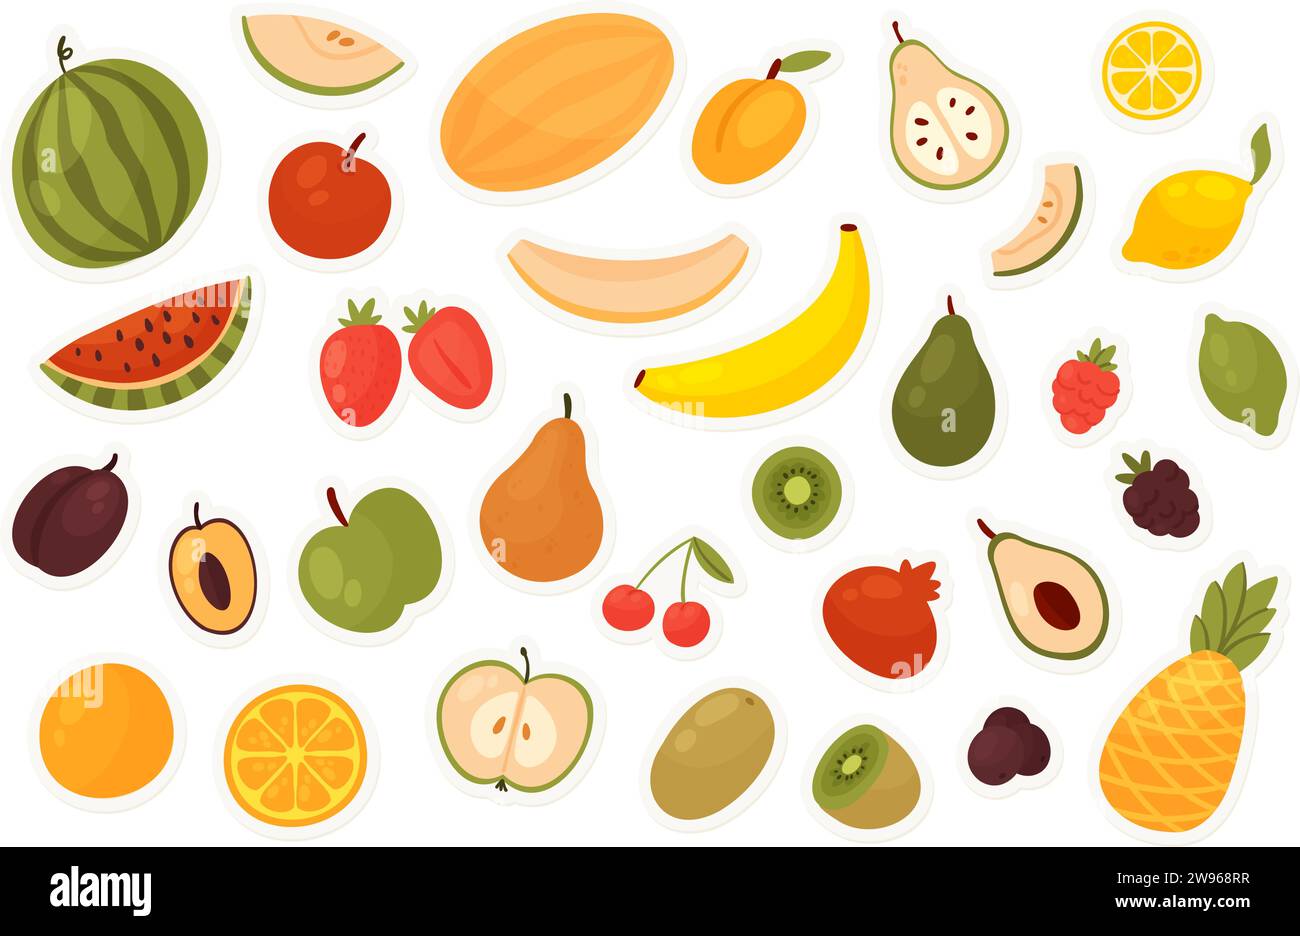 Frutta e bacche, adesivi alimentari set illustrazione vettoriale. Cartoon fette e mela intera lampone limone arancio banana fragola anguria pera ananas mora prugna isolato su sfondo blu Illustrazione Vettoriale